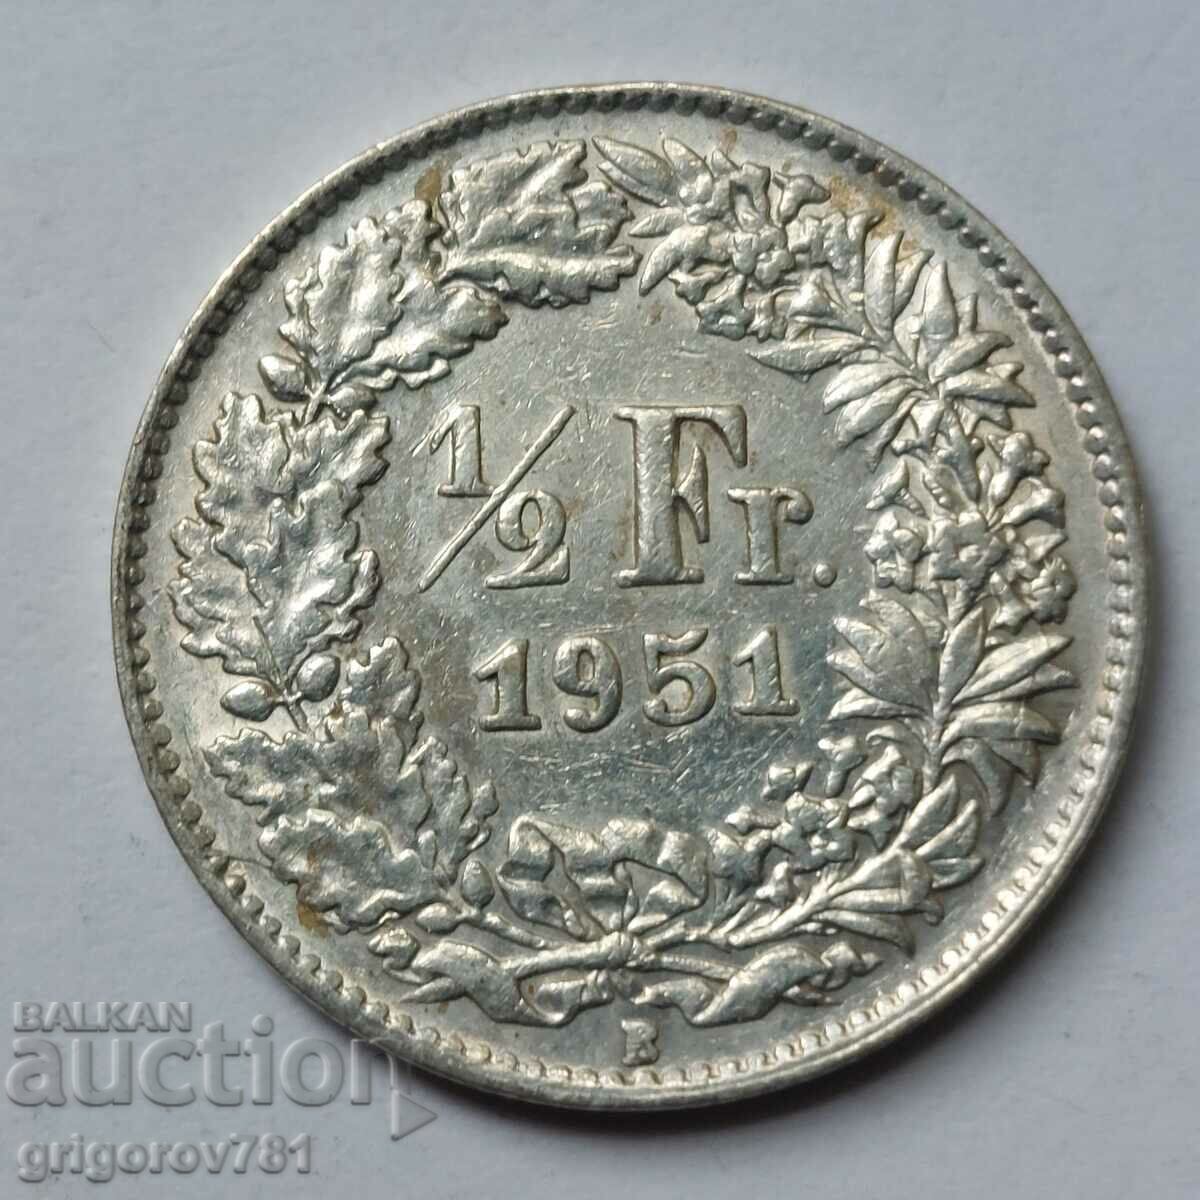 Ασημένιο φράγκο 1/2 Ελβετία 1951 B - Ασημένιο νόμισμα #48